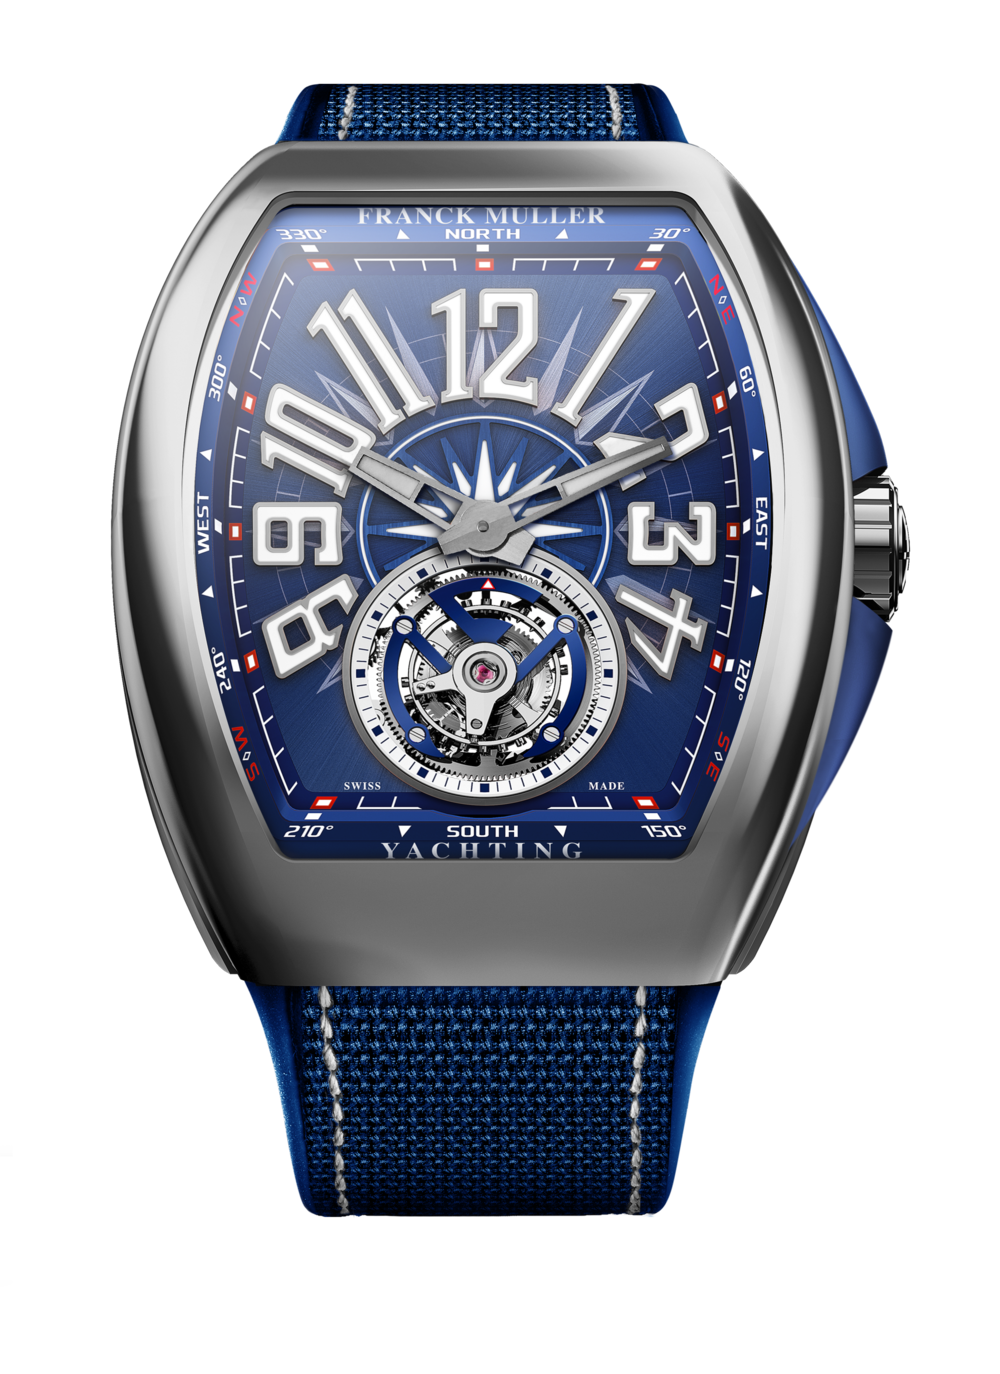 Replica Bentley Watch